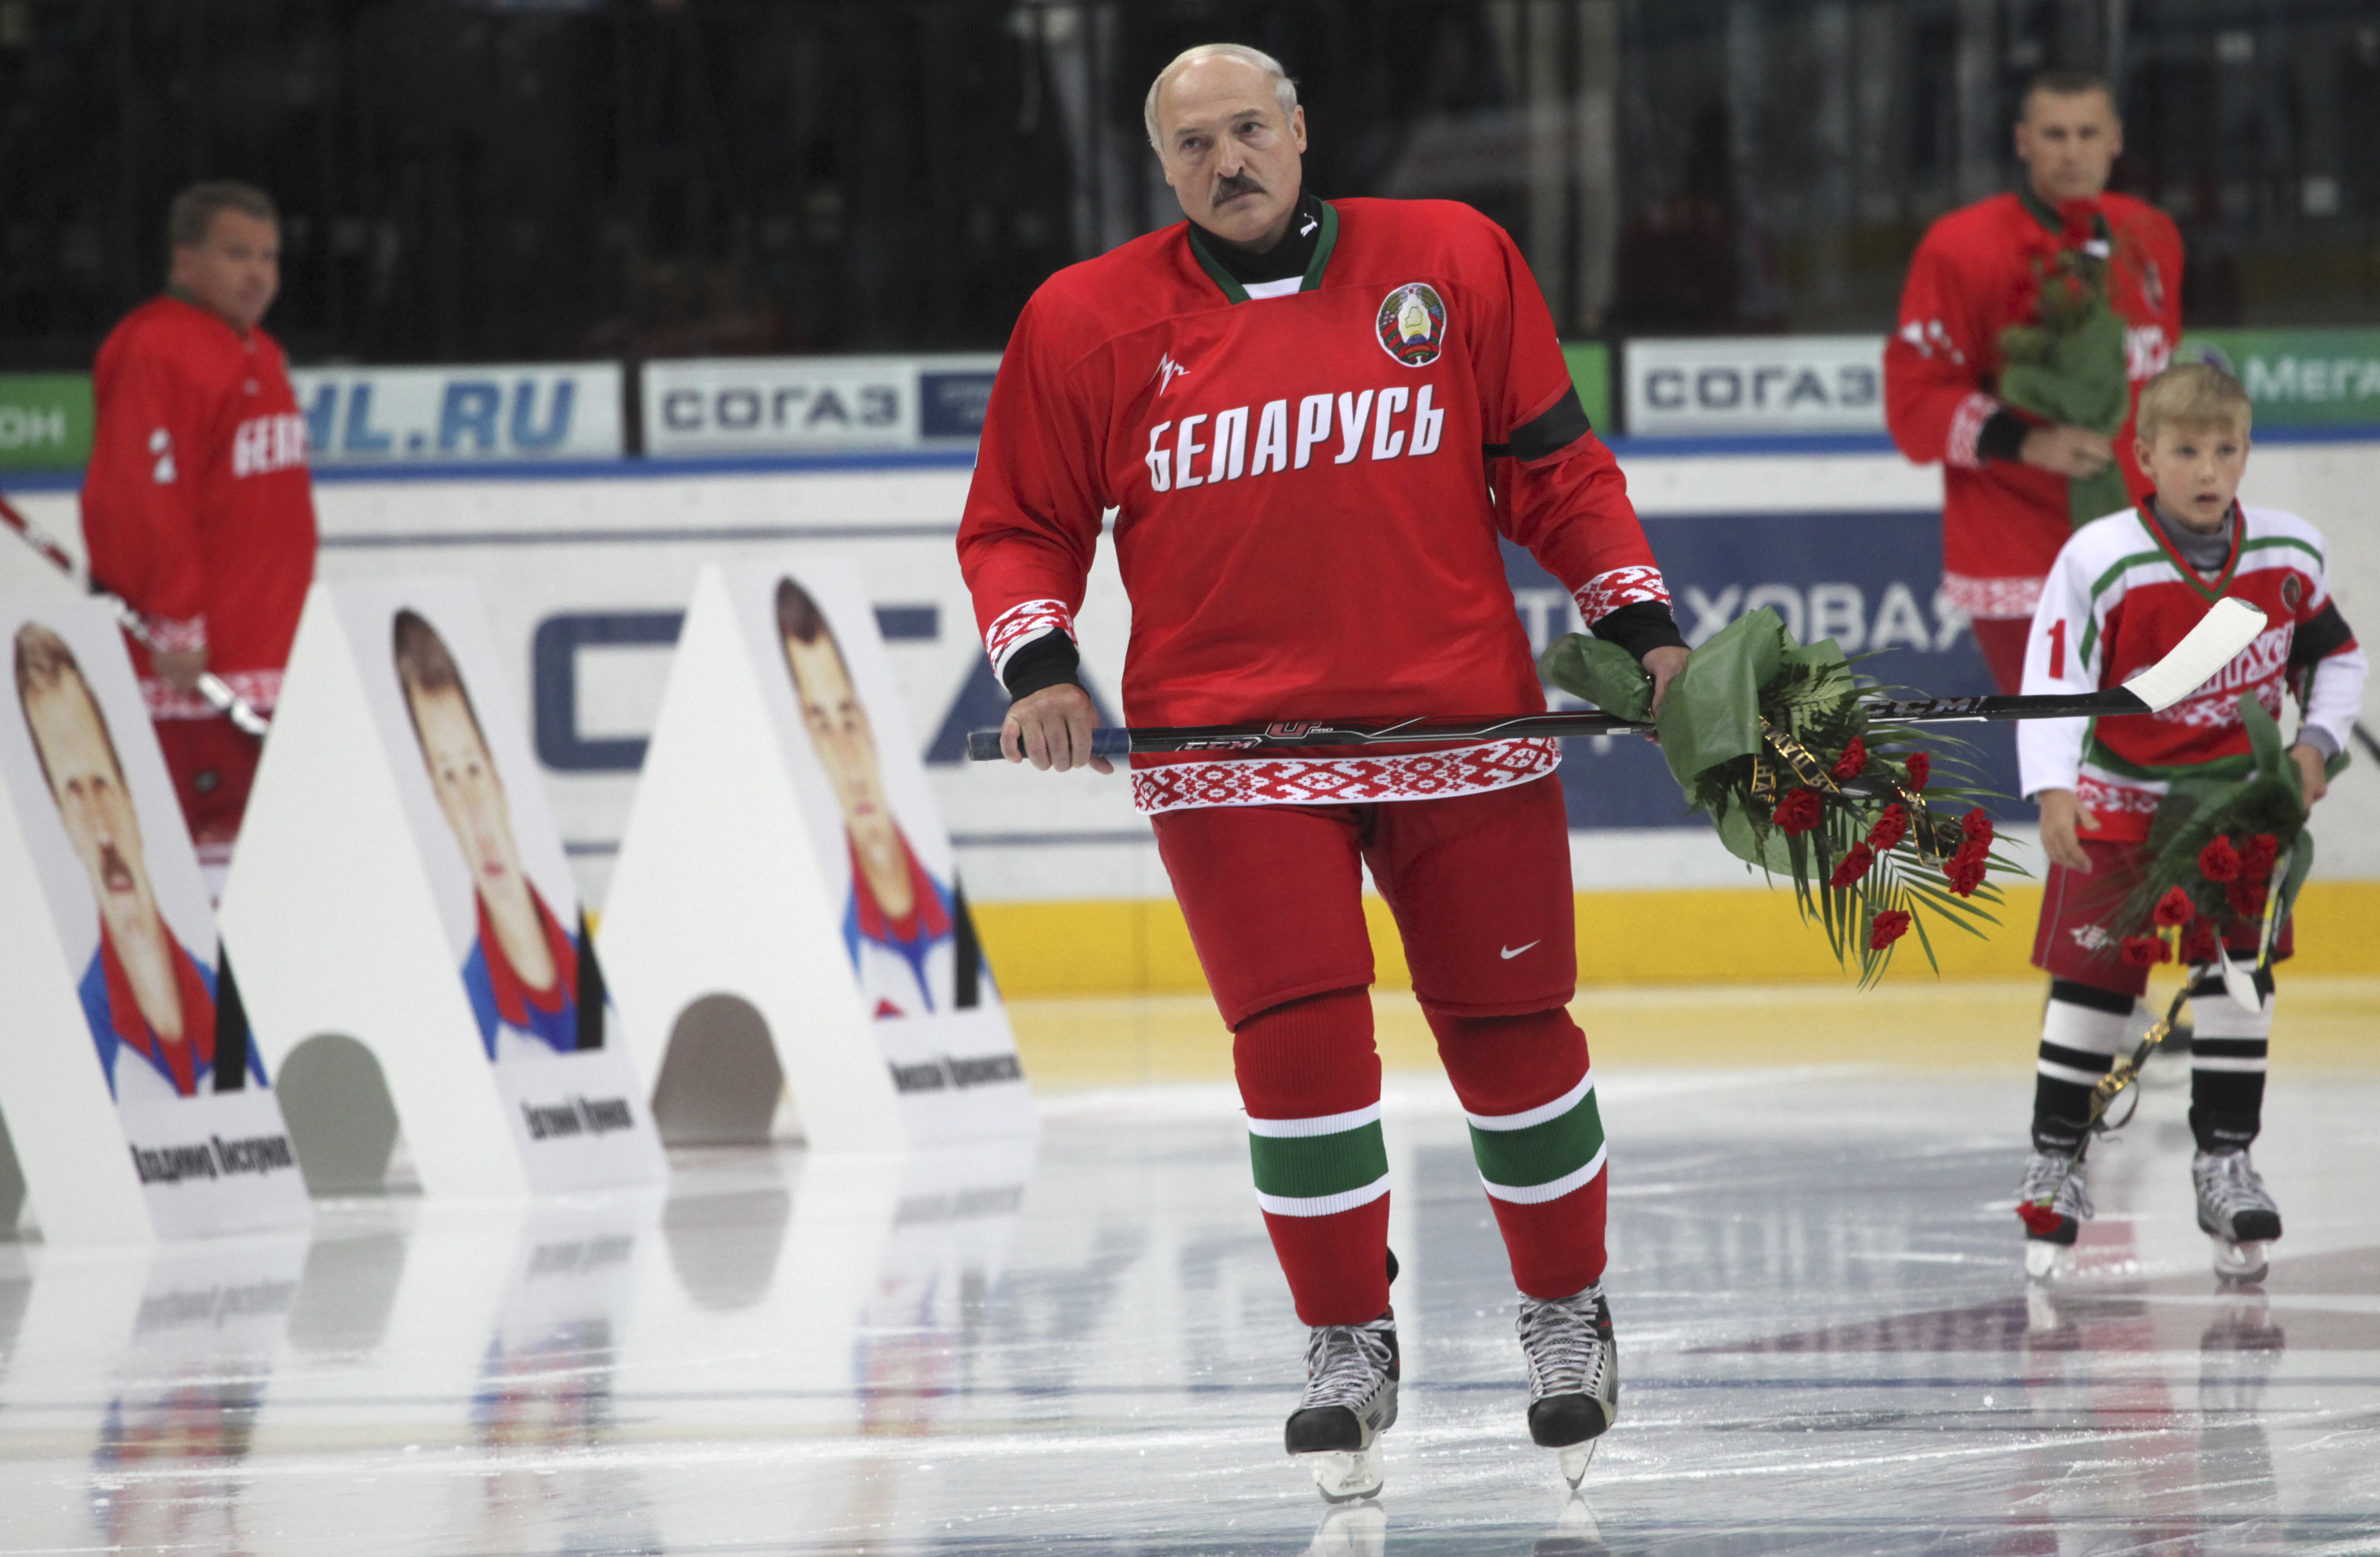 Vitryssland, Demokrati, Mänskliga rättigheter, Aleksandr Lukasjenko, Tre Kronor, Christer Englund, VM, ishockey